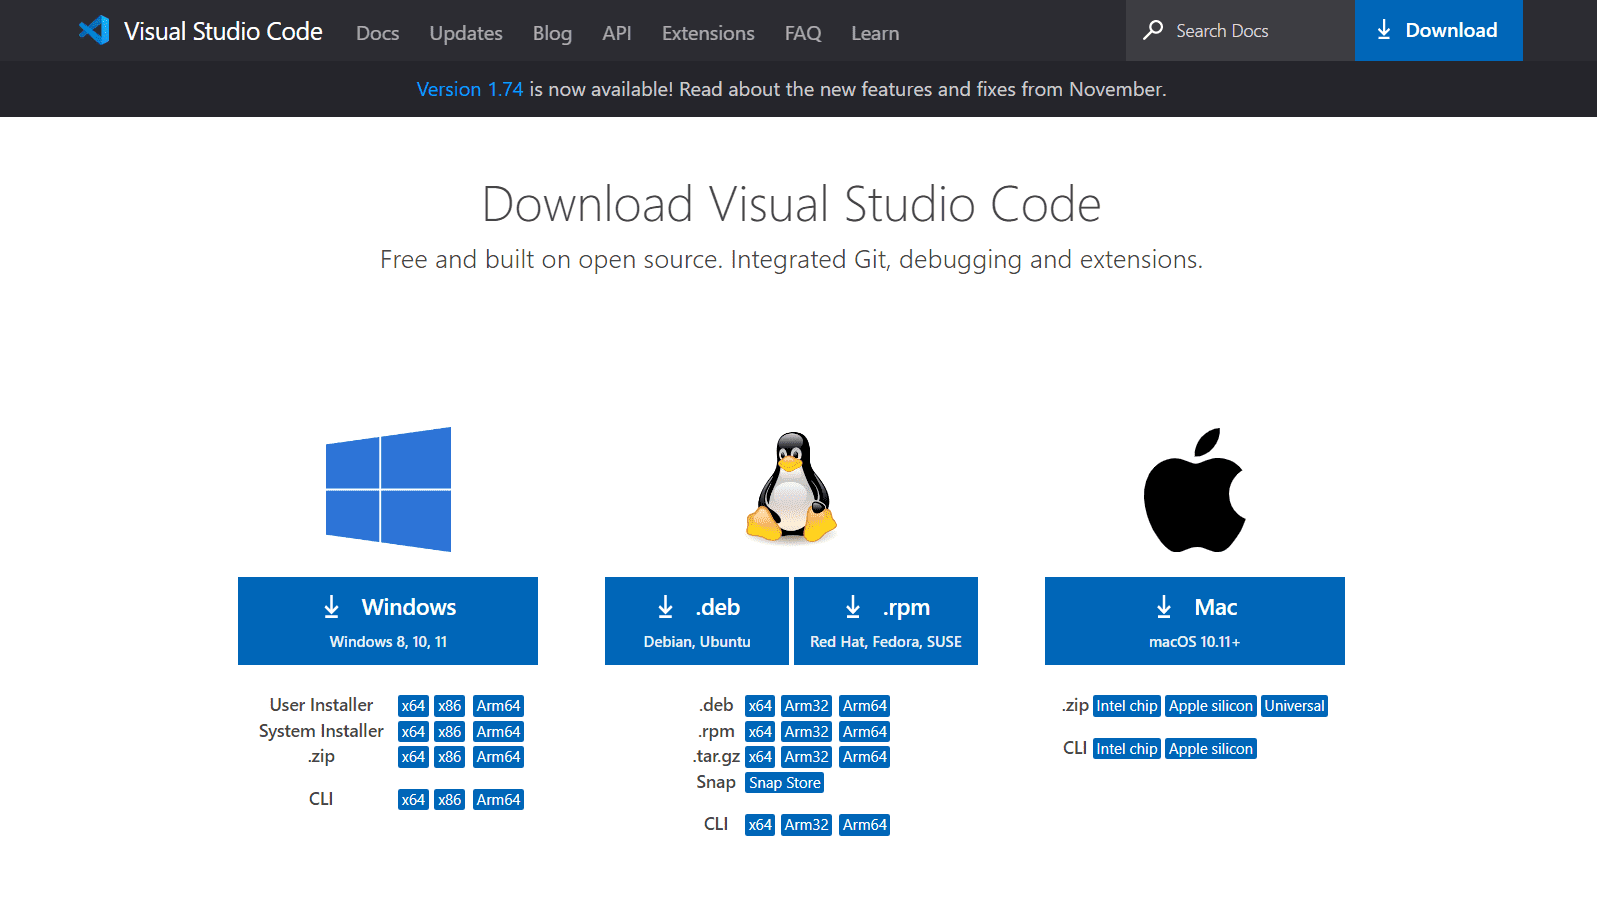 Página de download do Visual Studio Code com as logos do Windows, Linux, e Mac e um botão azul abaixo de cada um deles para realizar o download da IDE.